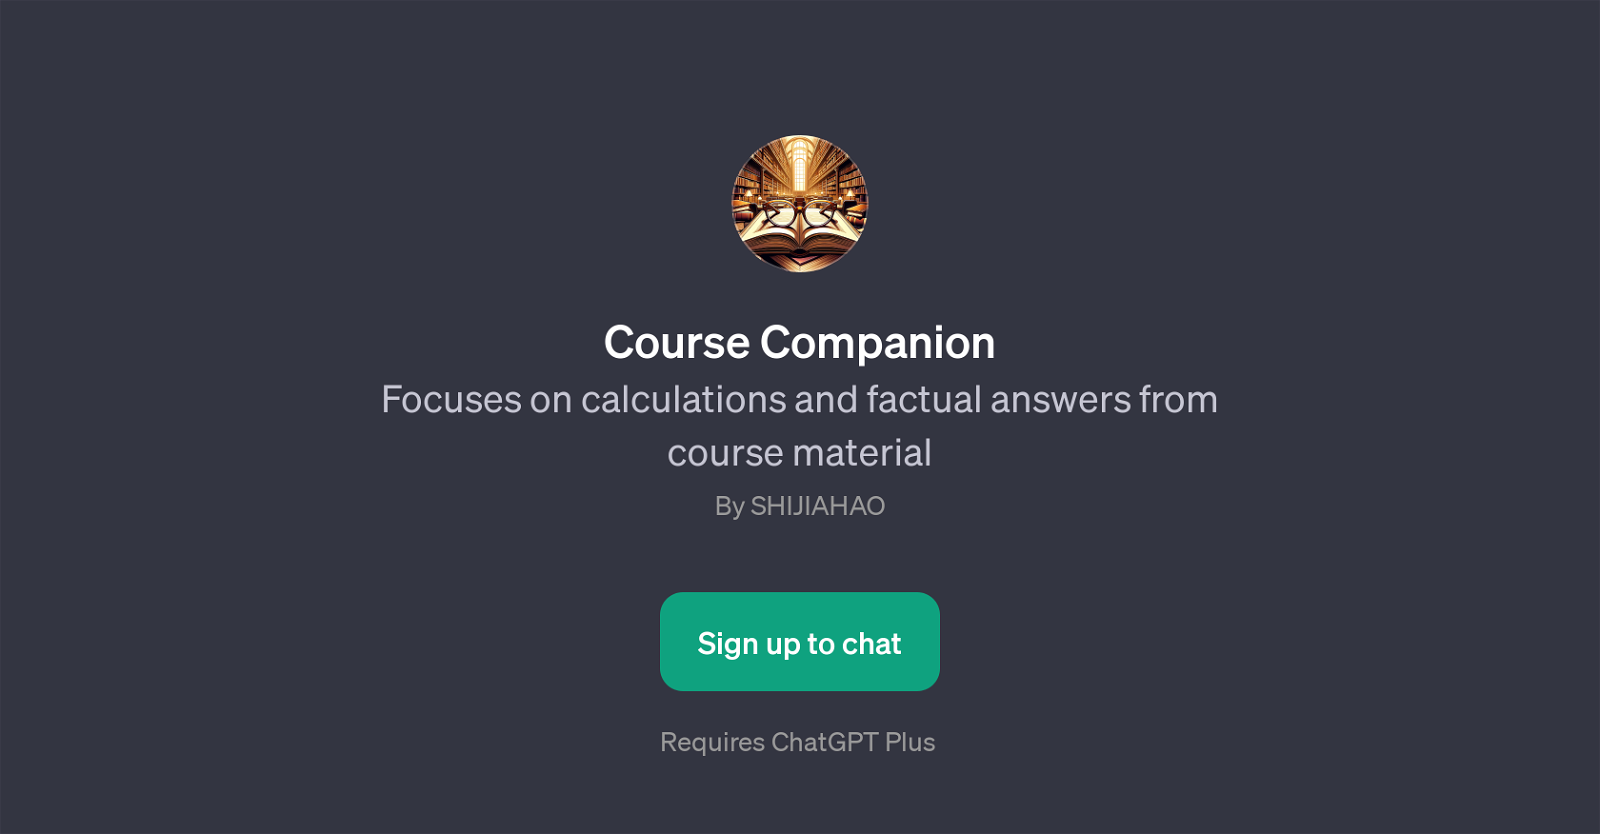 Course Companion website